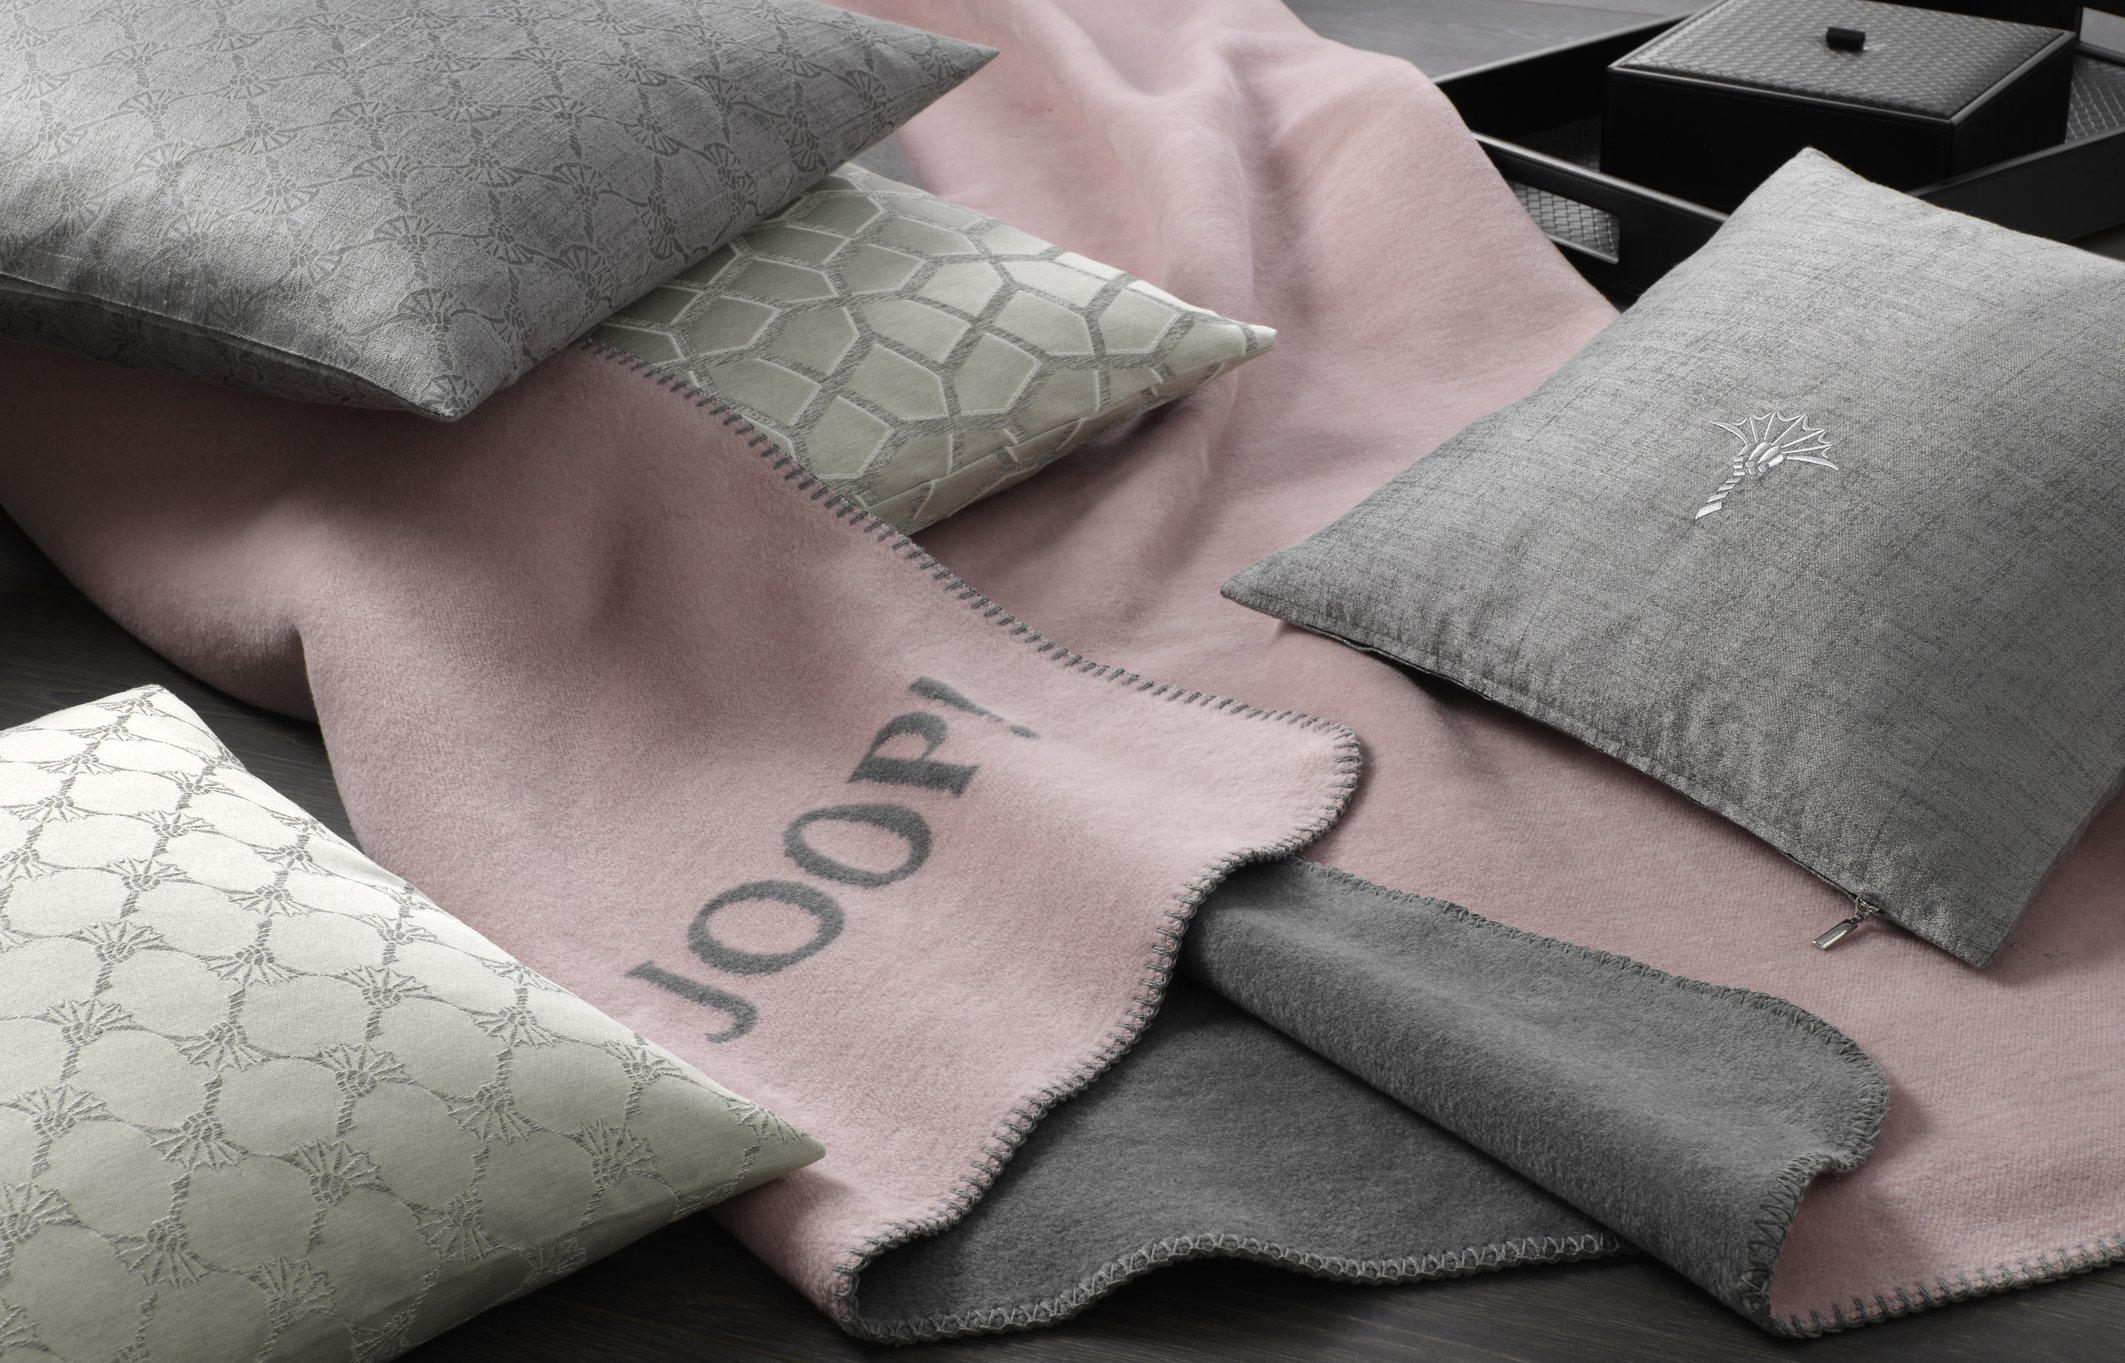 WOHNDECKE Uni Doubleface 150/200 cm  - Graphitfarben/Rosa, Basics, Textil (150/200cm) - Joop!